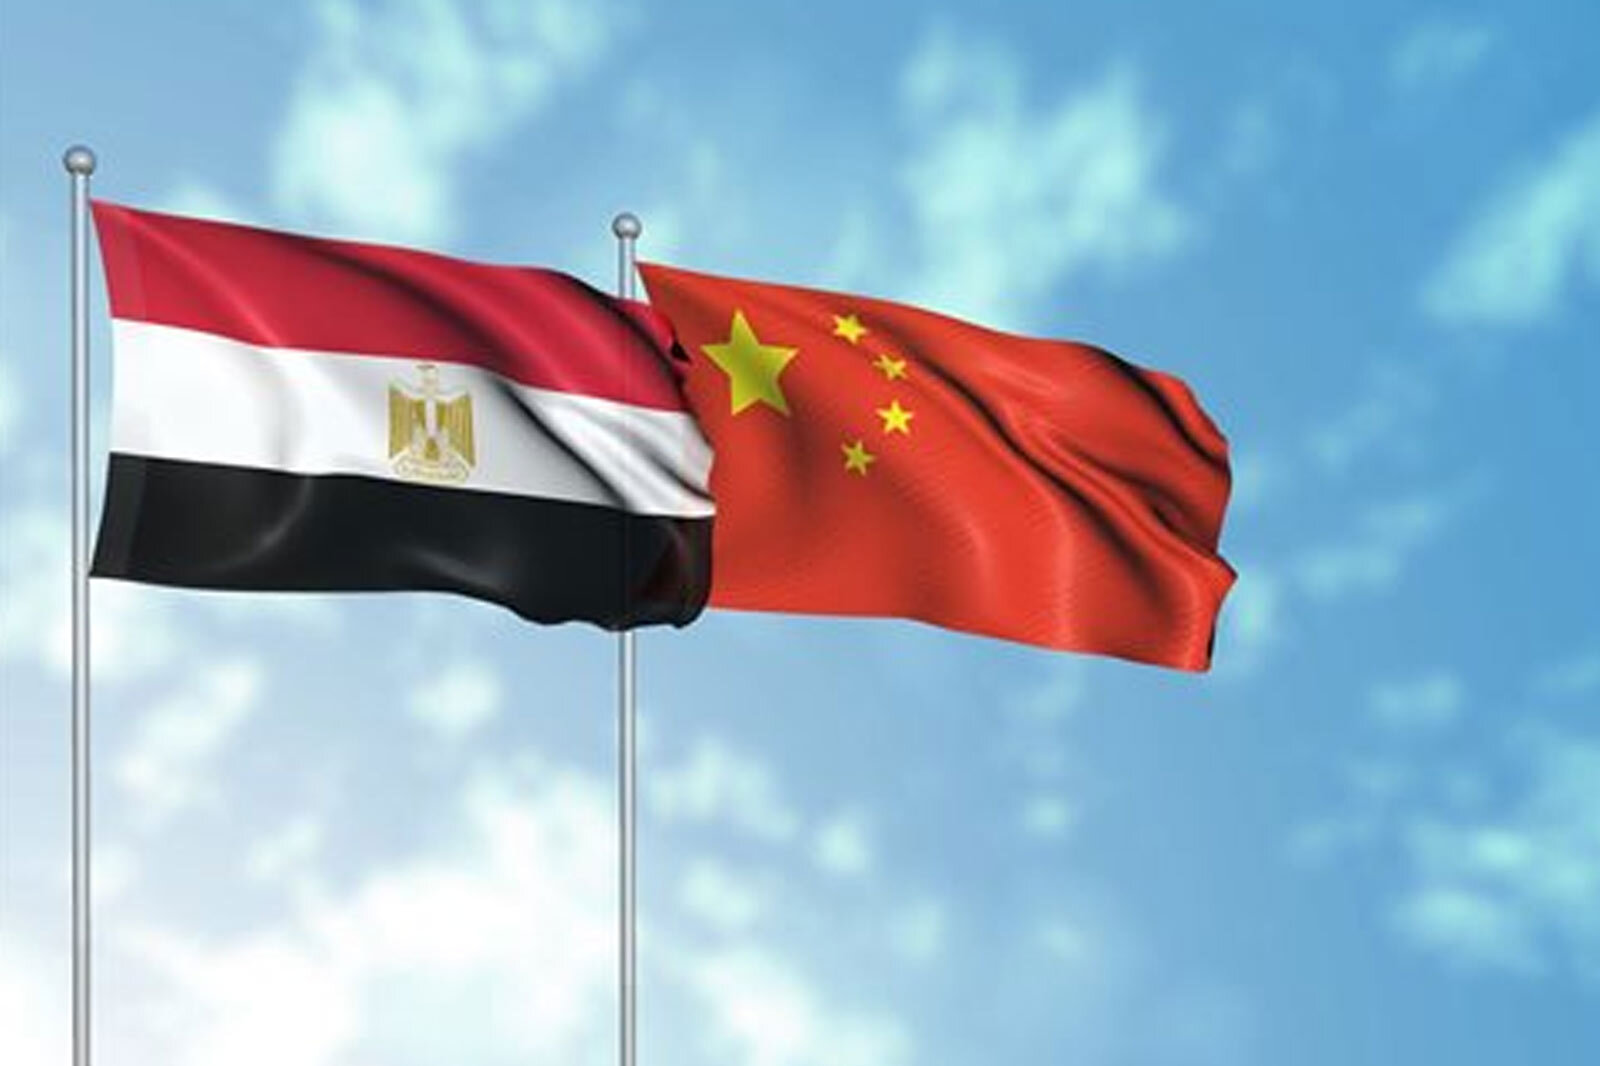 منطقة صناعية صينية كبرى في مصر باستثمارات هائلة